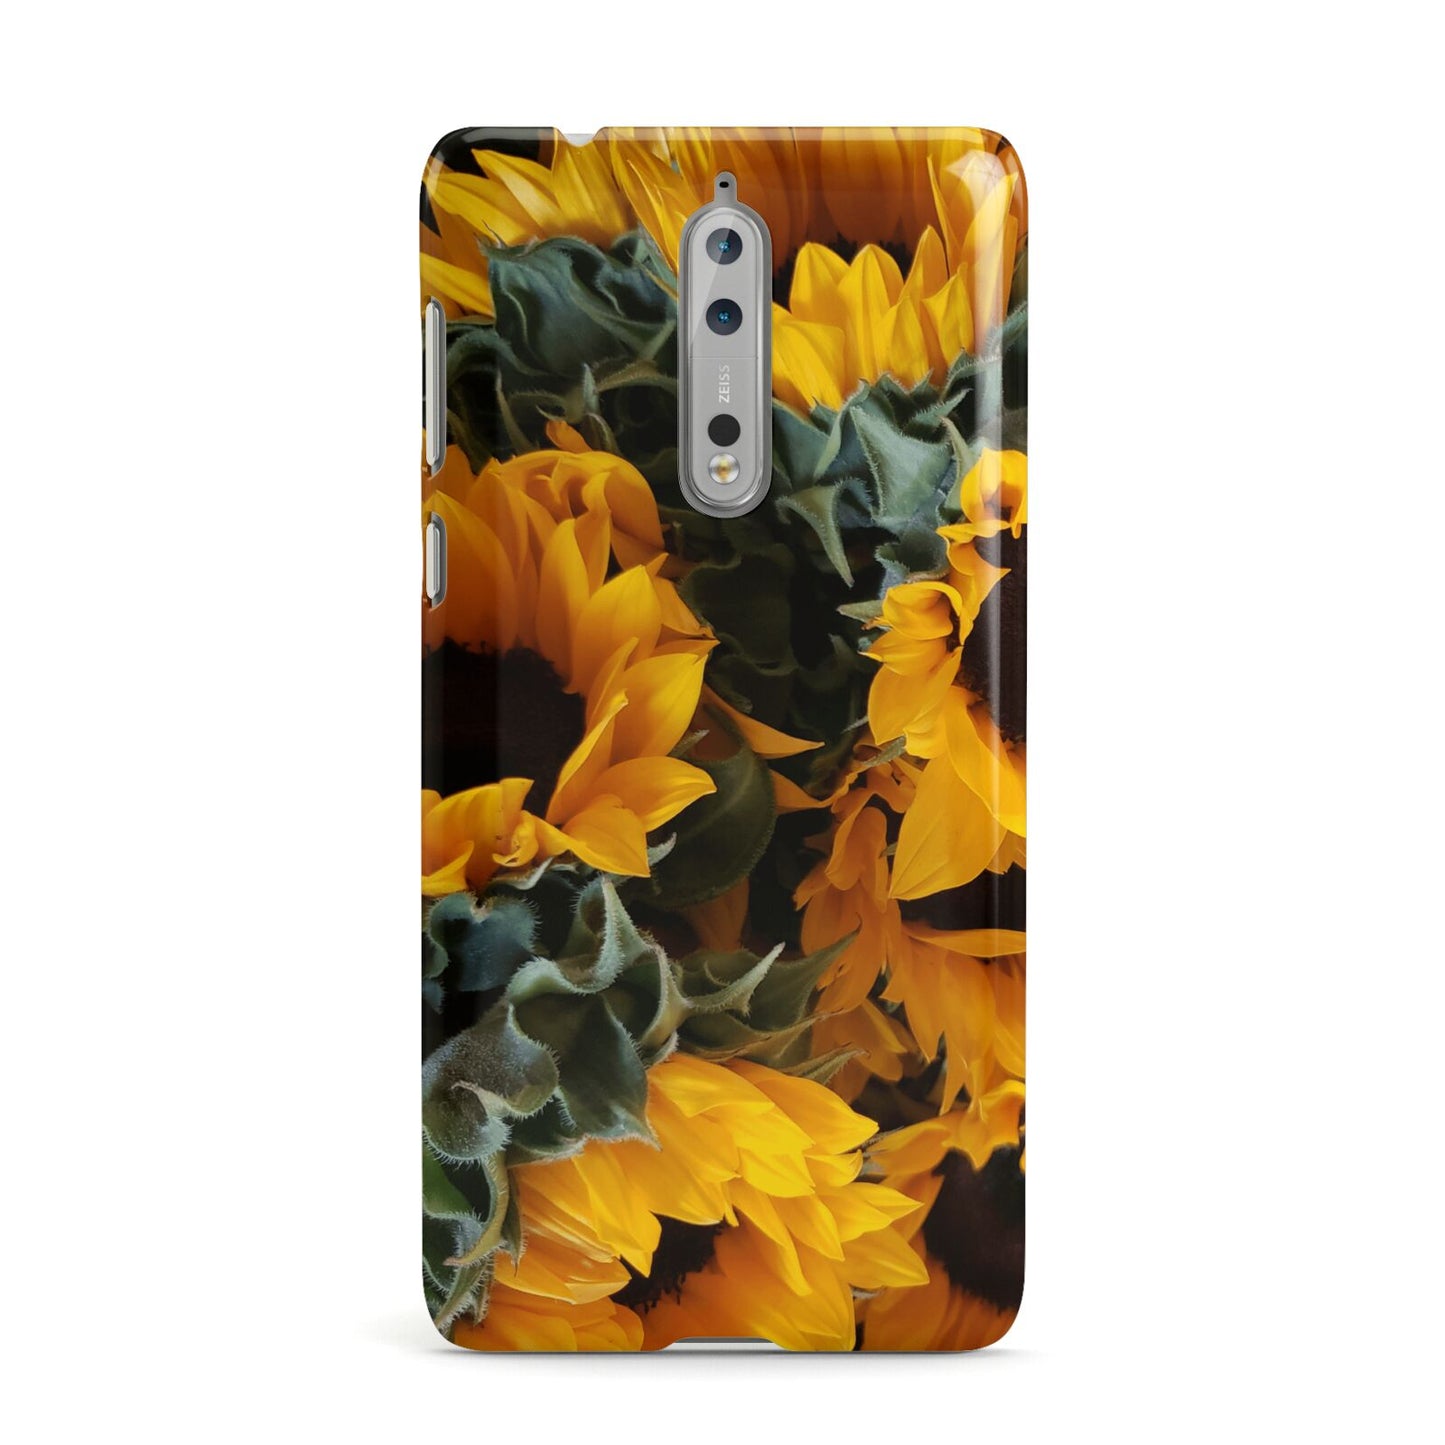 Sunflower Nokia Case